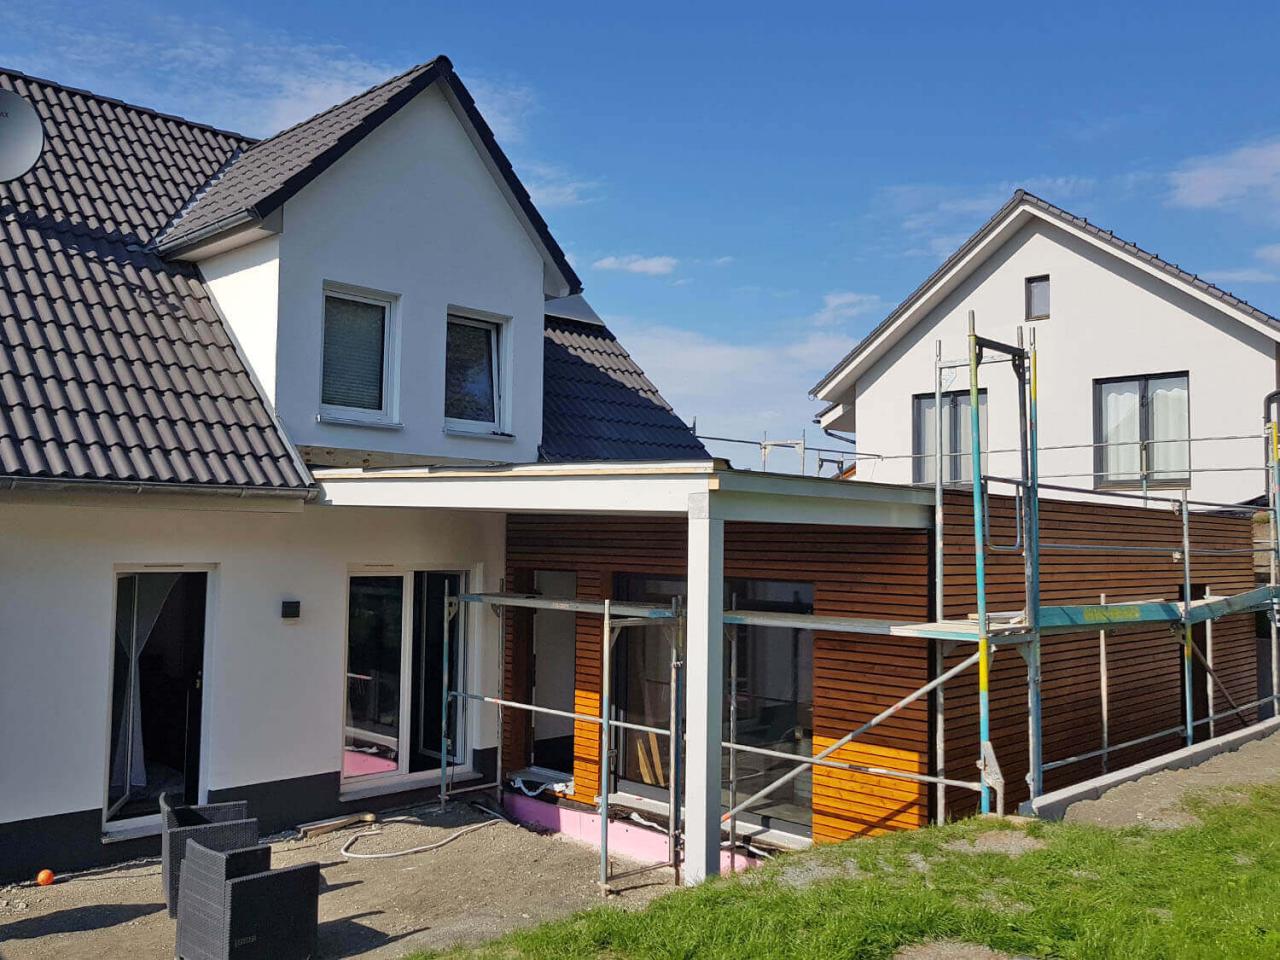 Anbau an ein bestehendes Einfamilienhaus in Dietersheim Engelhardt